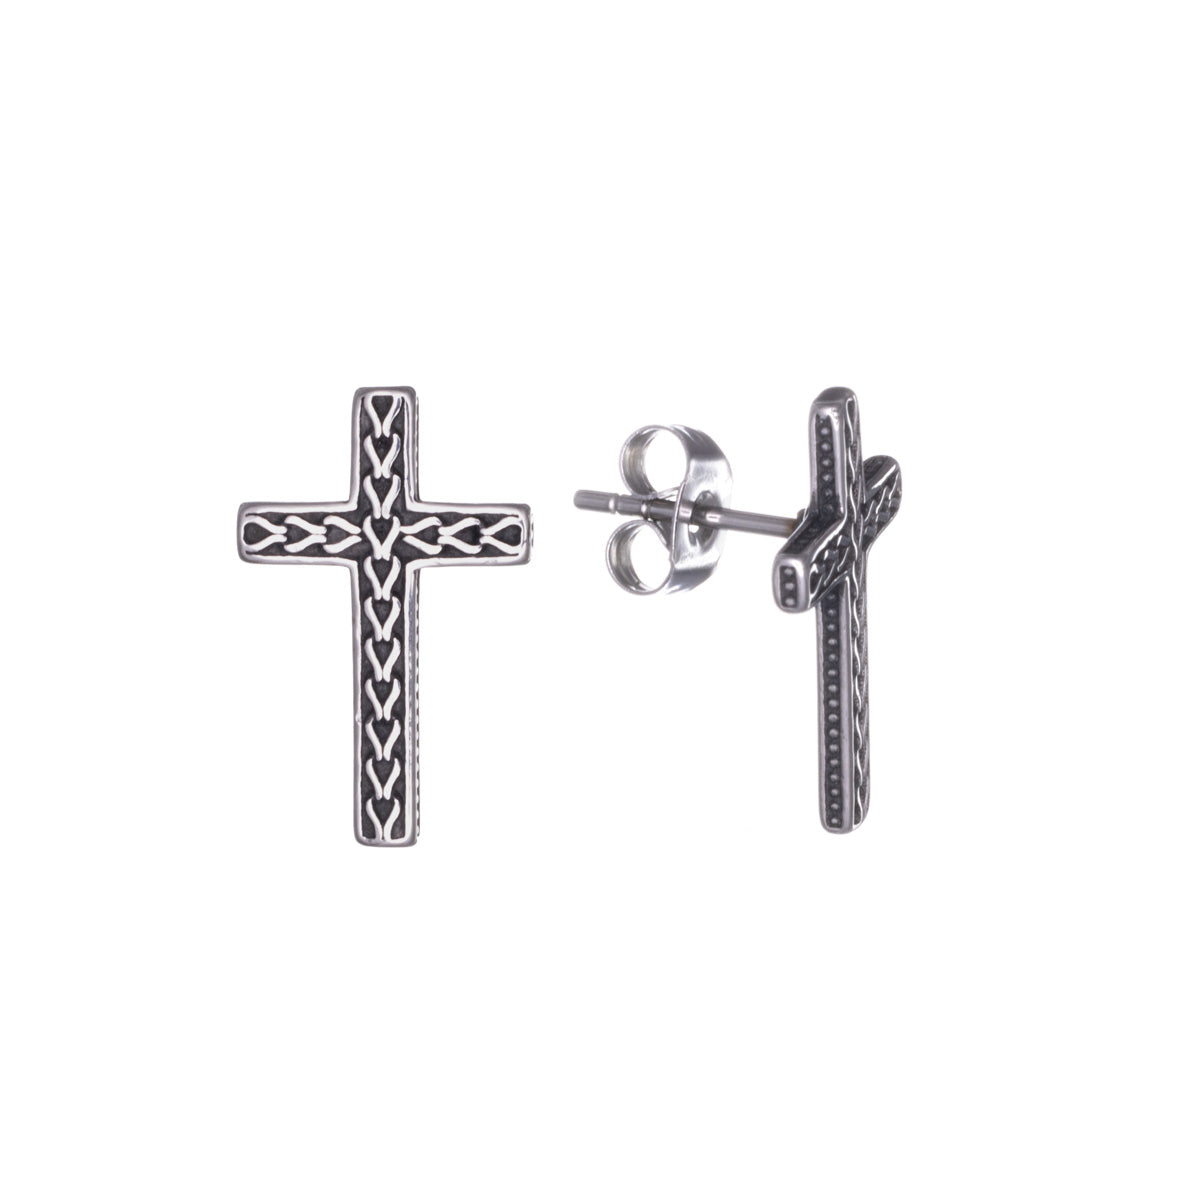 Patterned cross earrings (Steel 316L)